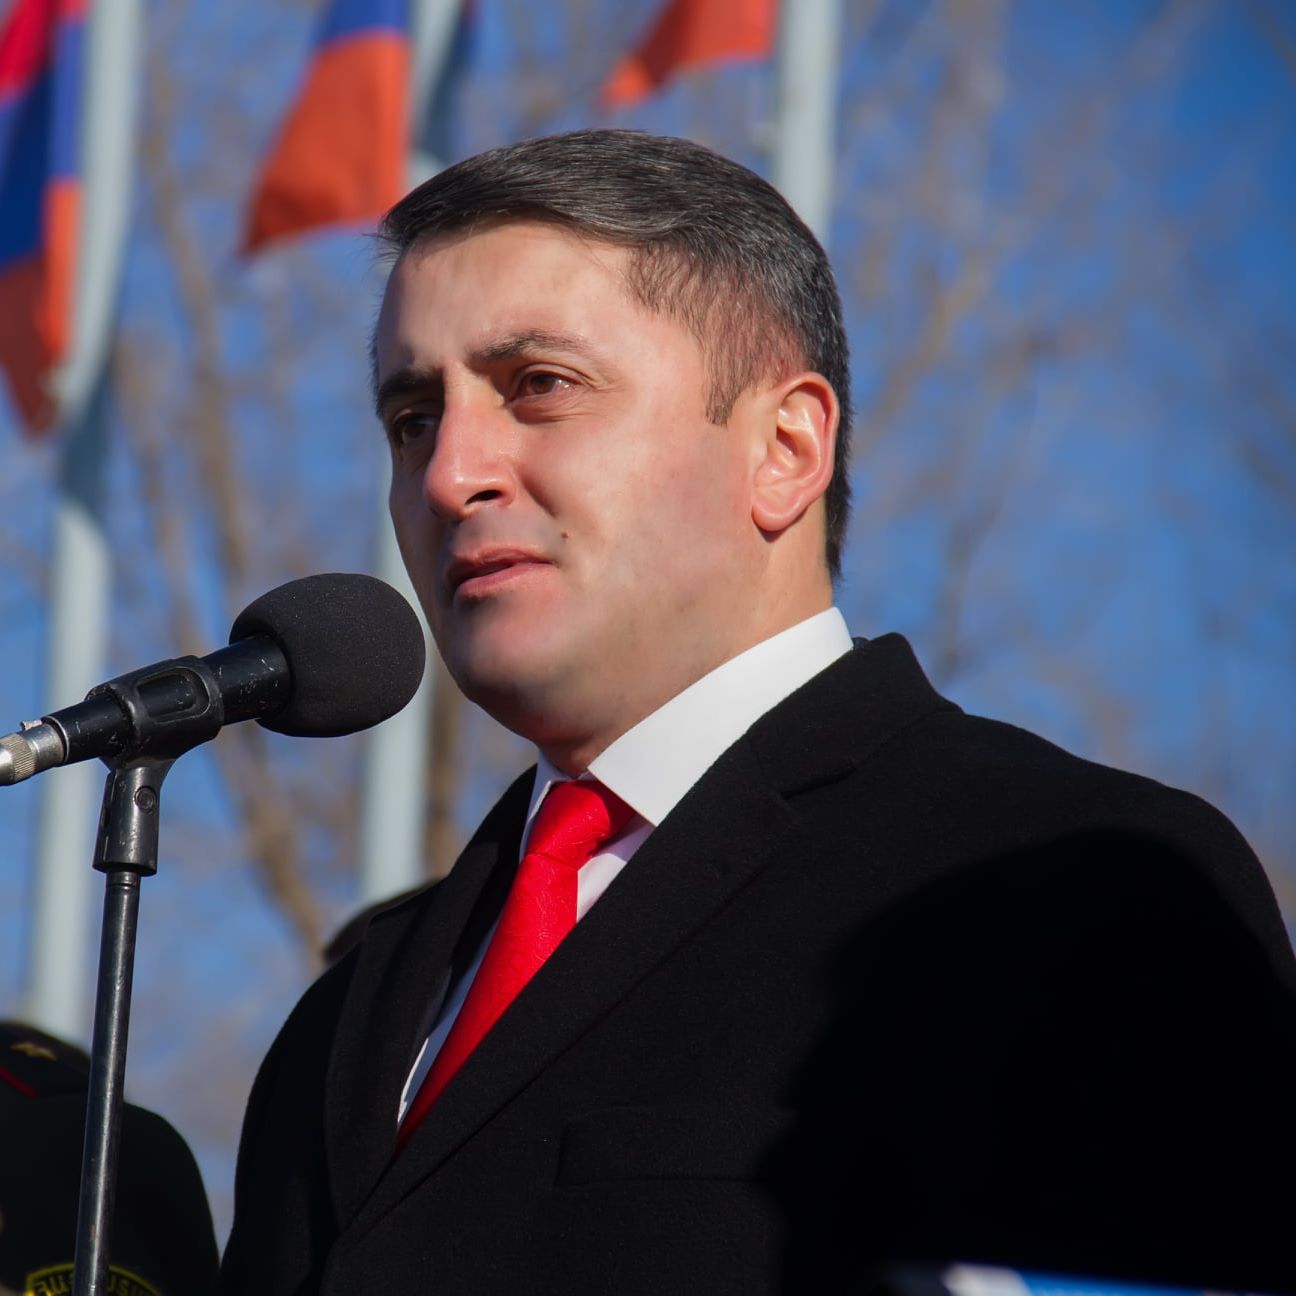 Հայաստանը պետք է ունենա արտաքին քաղաքականության հստակ կողմնորոշվածություն. Խաչիկ Ասրյան